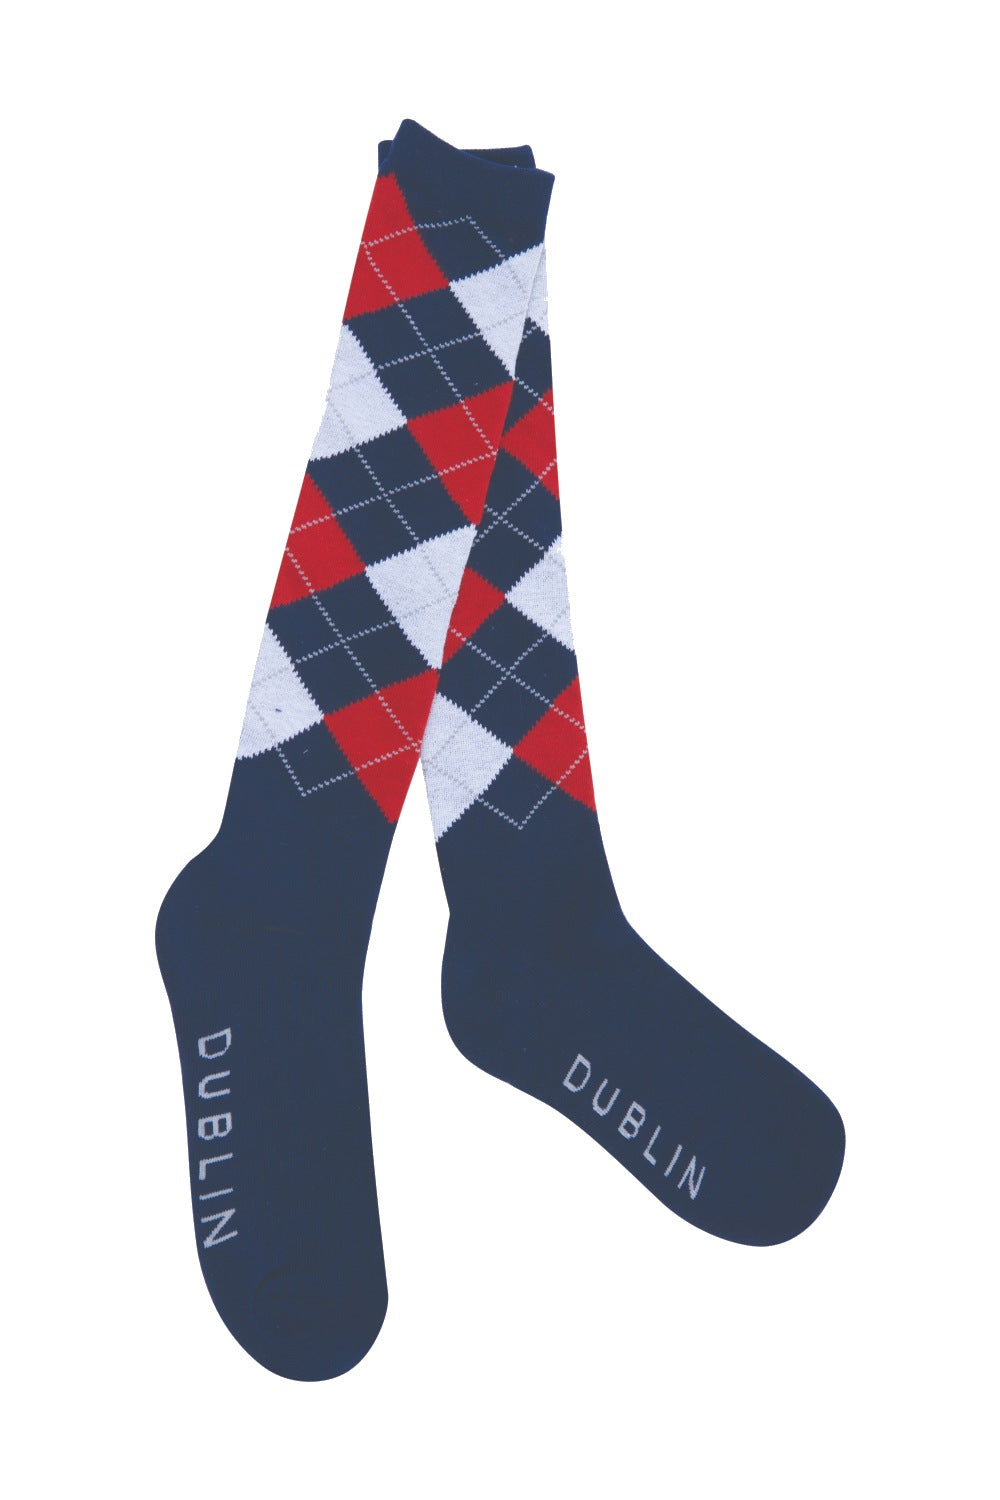 Dublin Argyle Socks- Navy/Red/White 